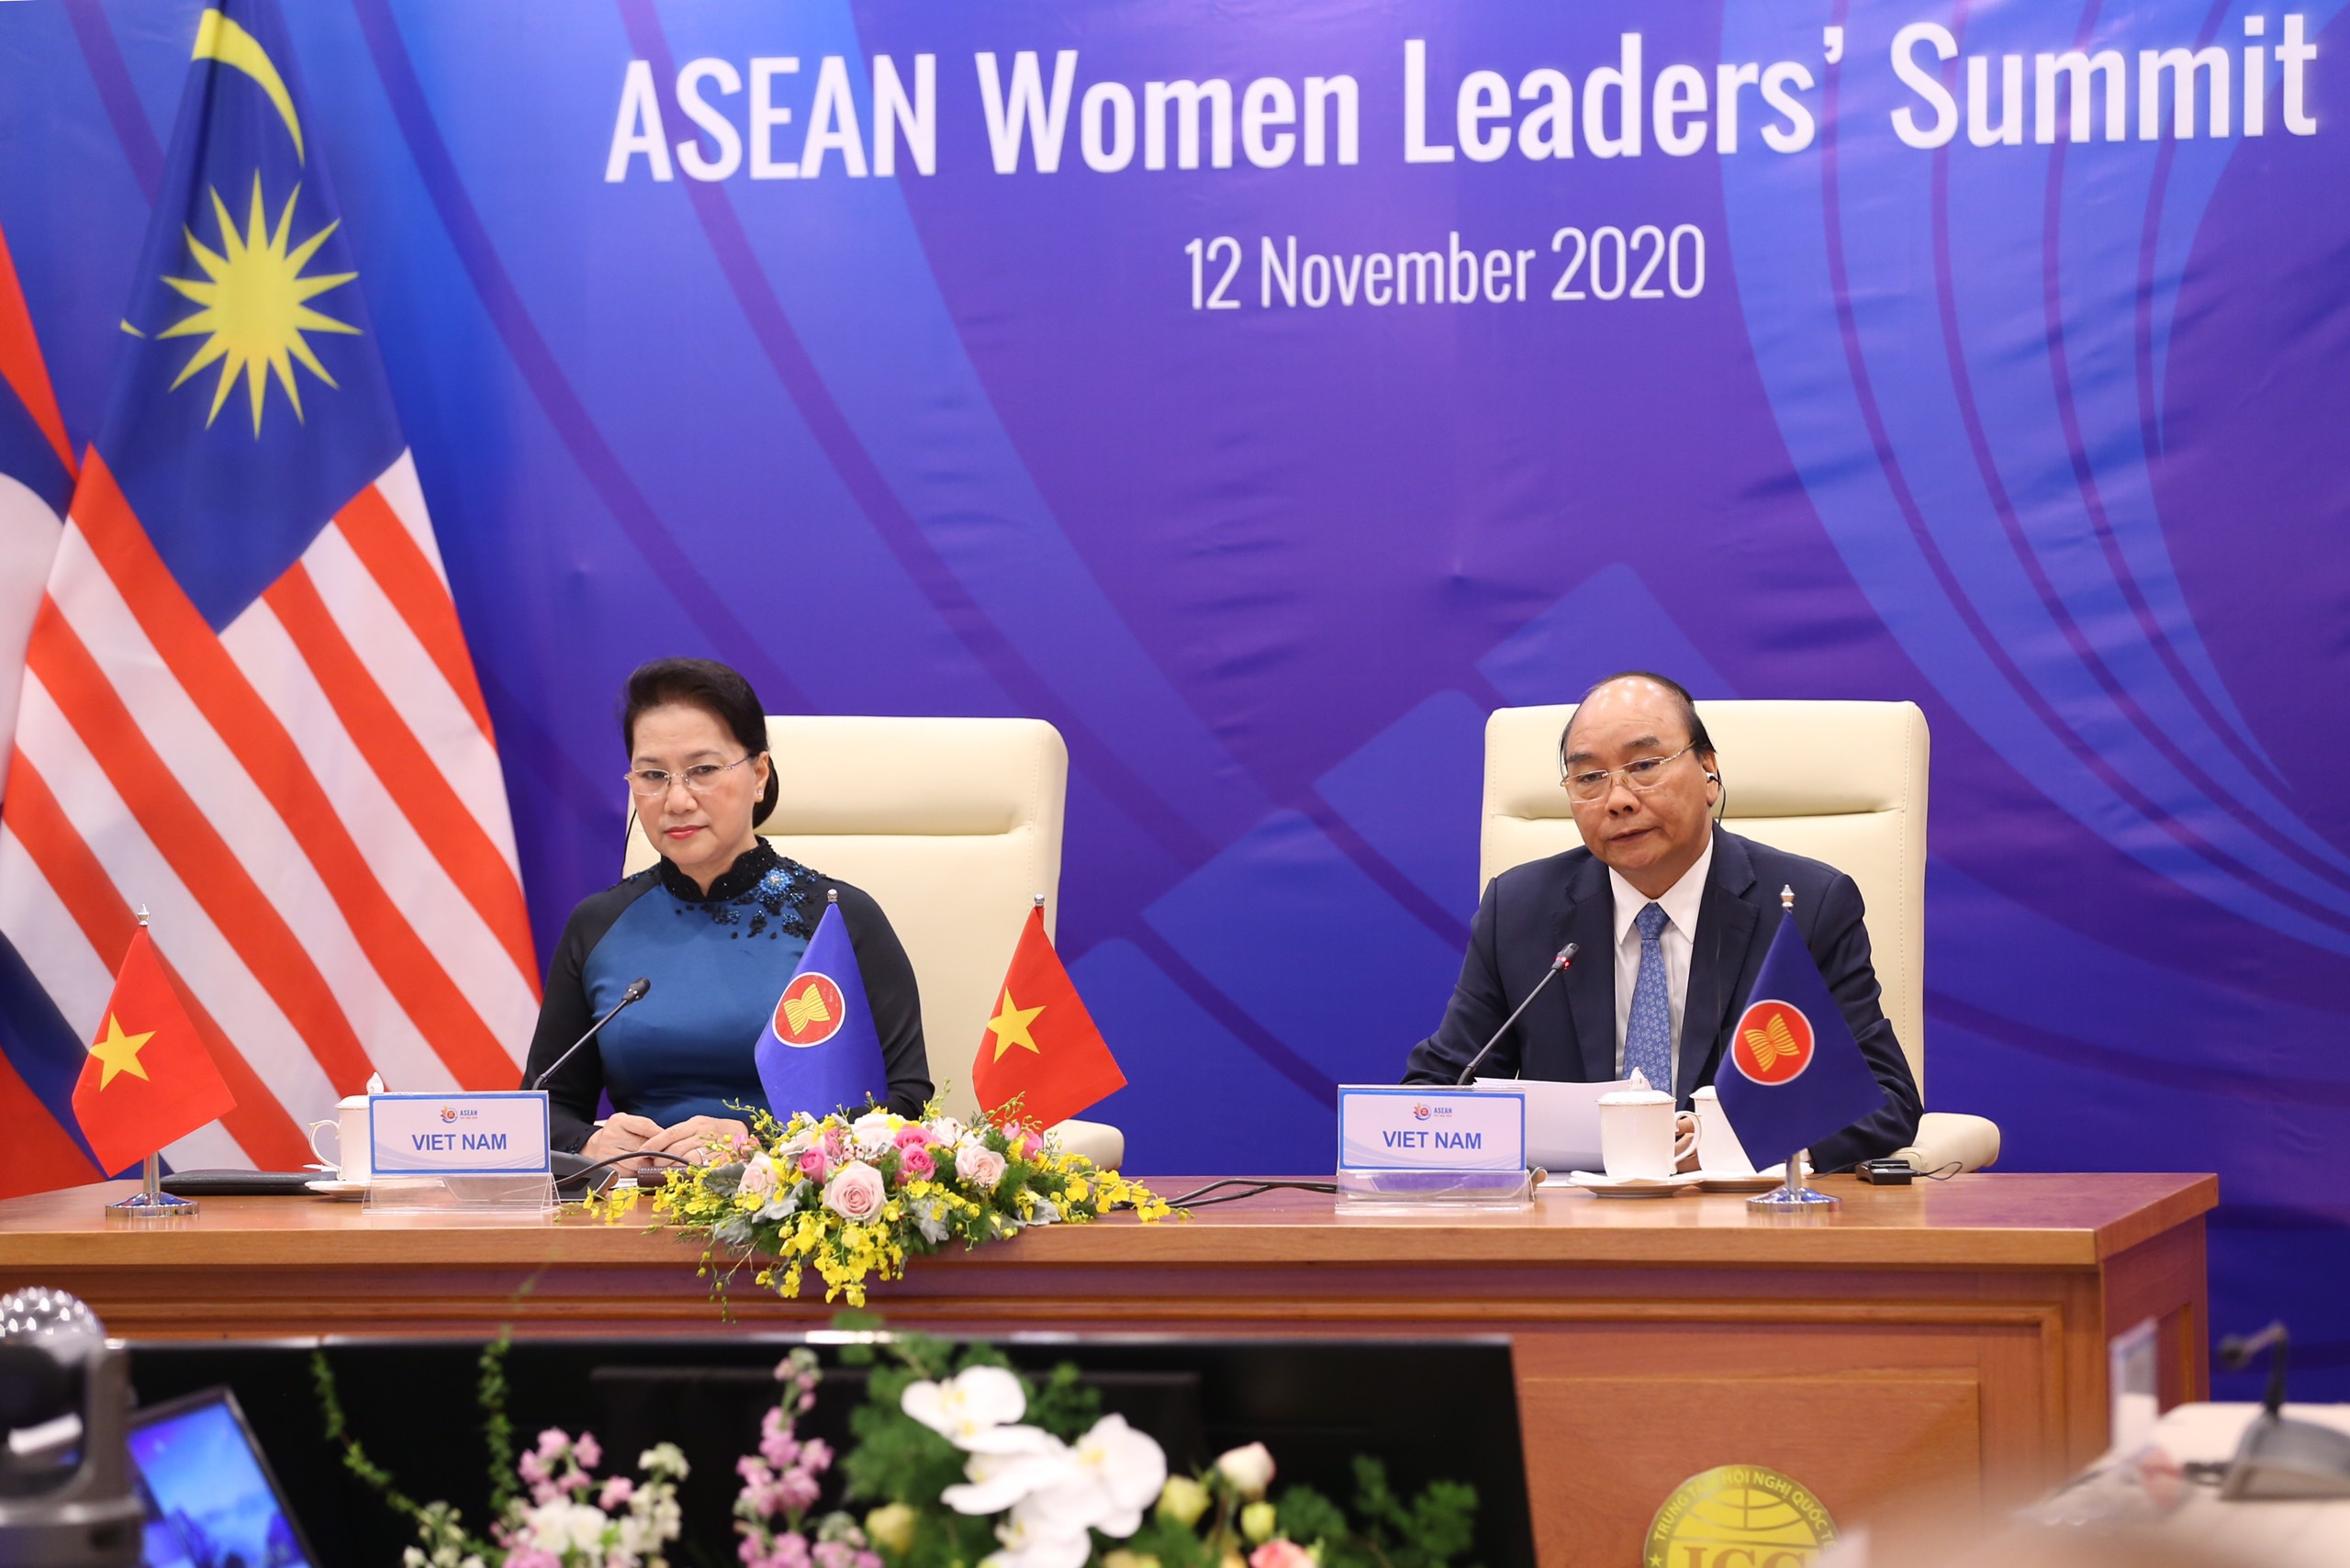 Phụ nữ: Phụ nữ là những người đóng vai trò quan trọng trong mọi gia đình và xã hội. Chúng tôi rất tự hào vì tình cảm và lòng hiếu thảo của phụ nữ Việt Nam. Năm 2024, xã hội đang chú trọng công bằng giới tính và đem lại nhiều cơ hội phát triển cho phụ nữ. Hãy cùng xem hình ảnh về phụ nữ để trân trọng và đưa ra sự ủng hộ cho họ.